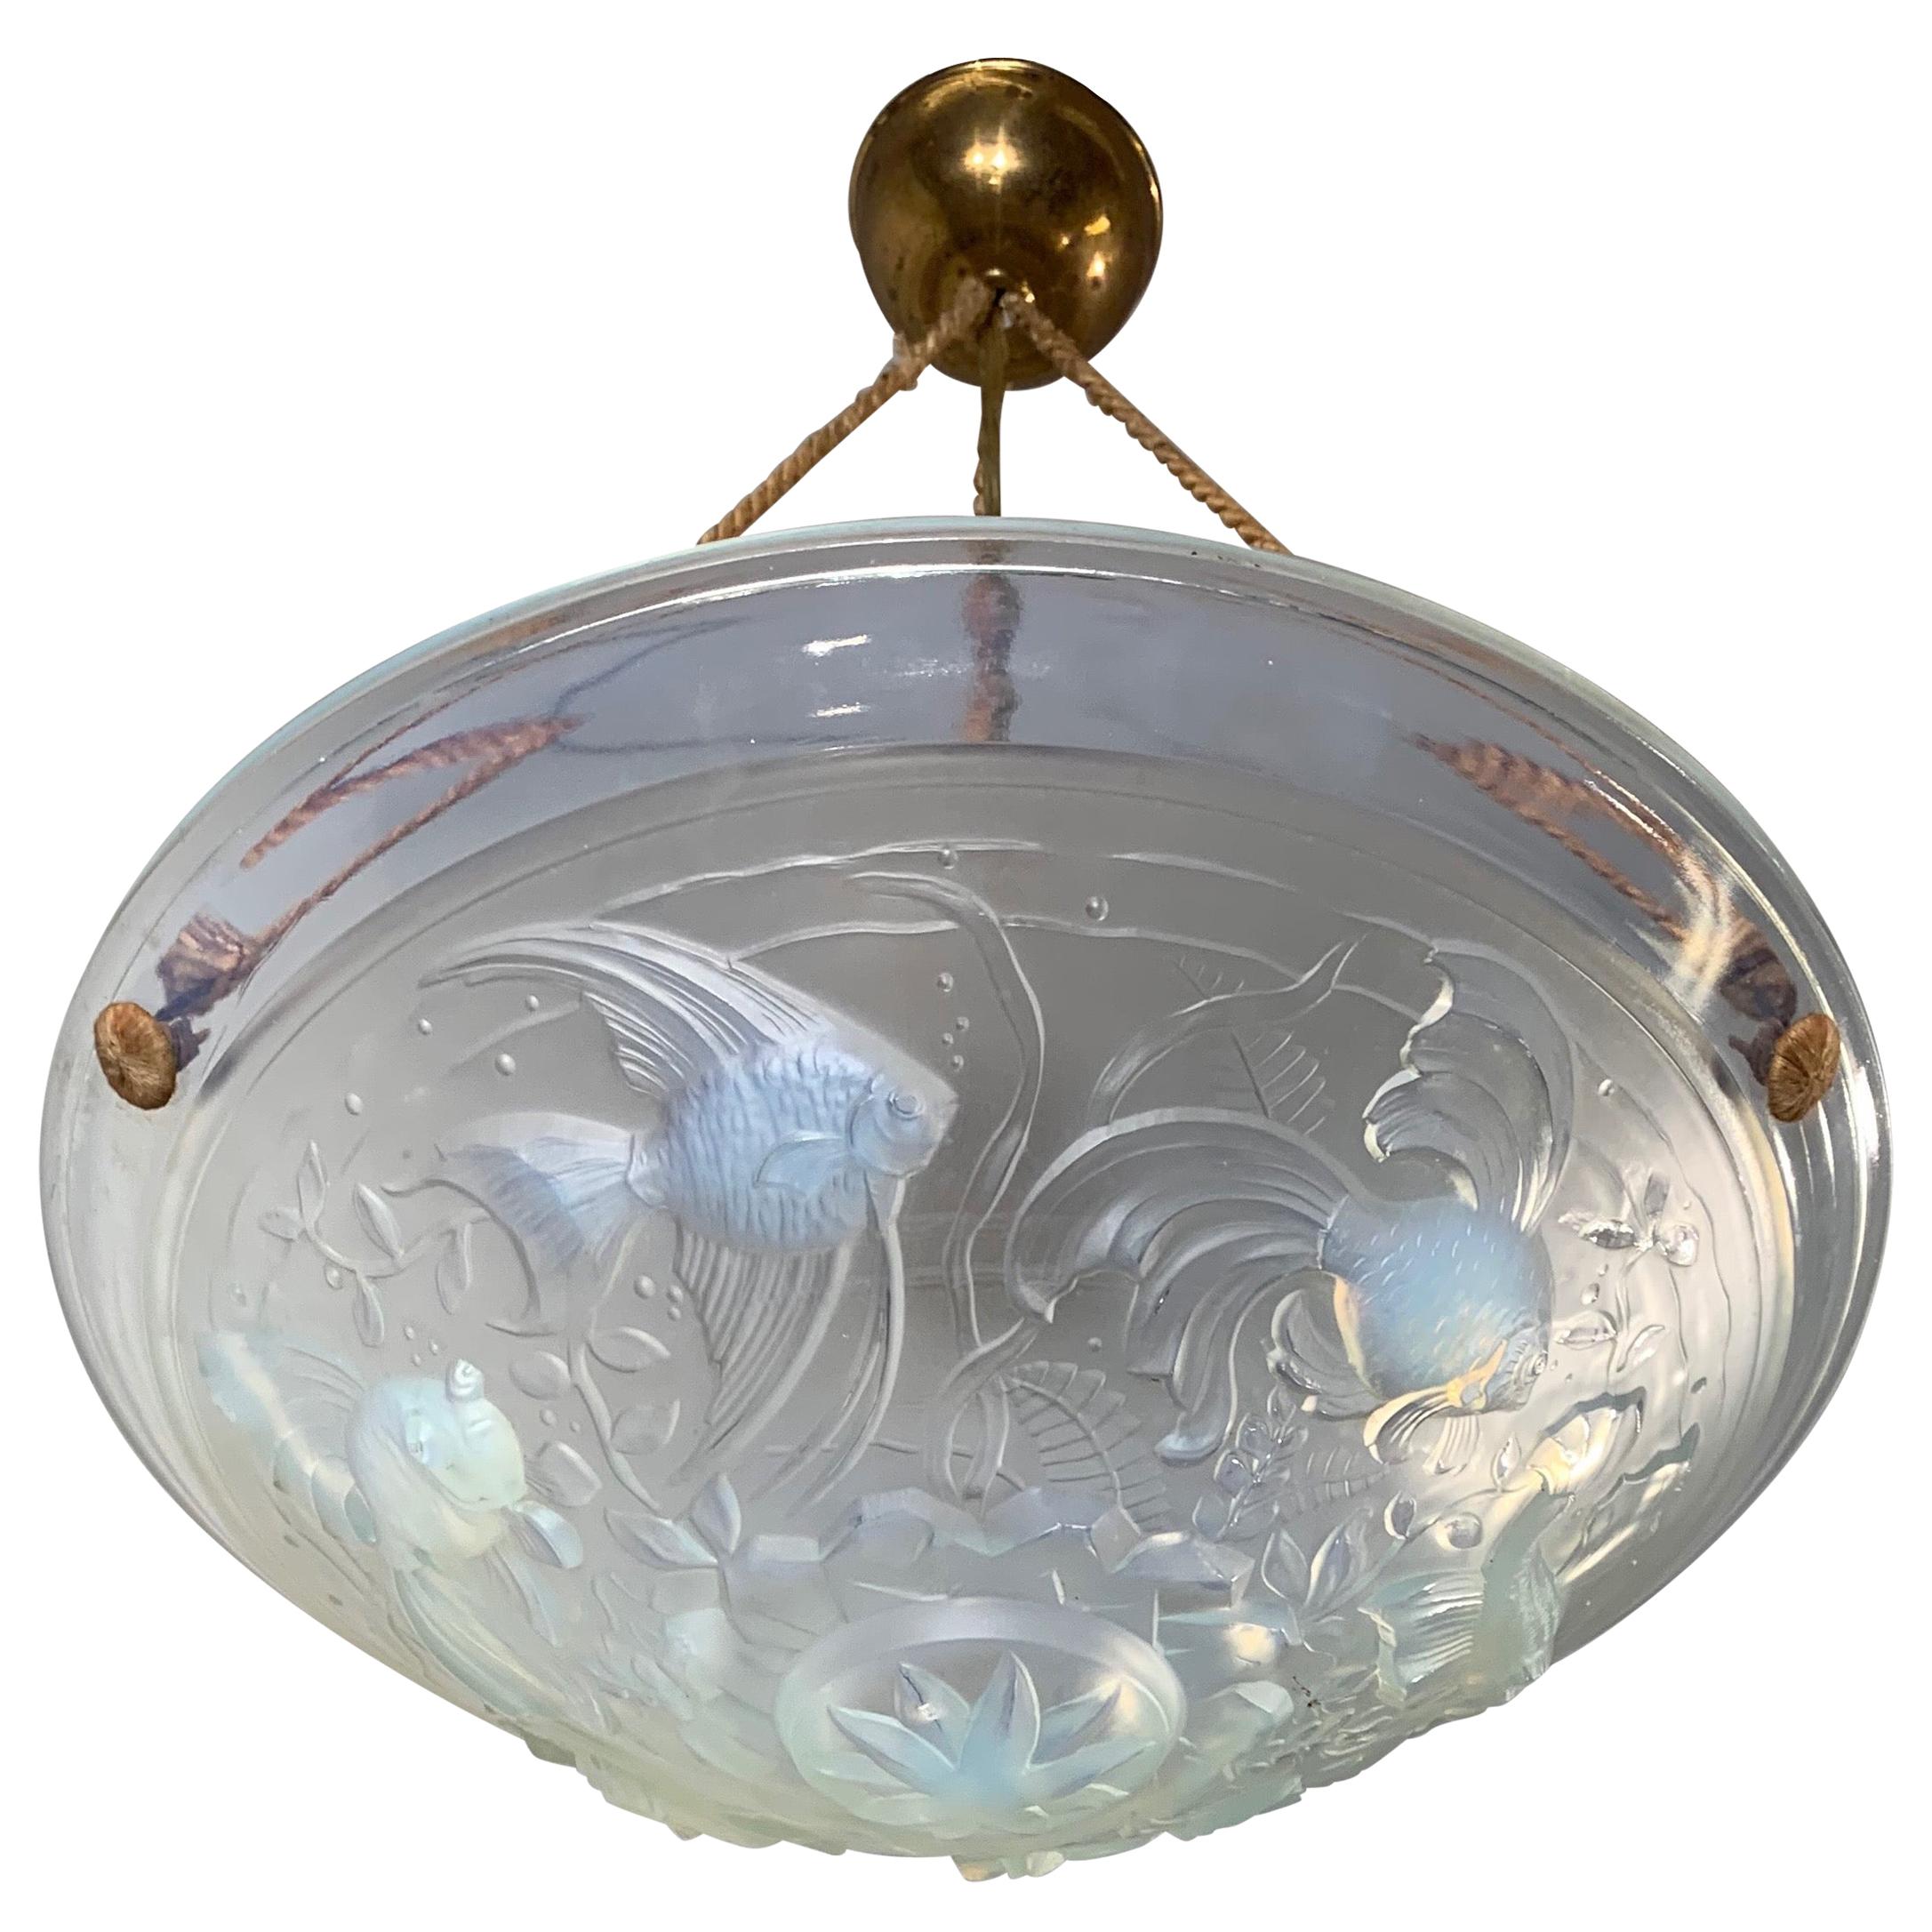 Delightful Art Deco Pendant Light with René Lalique Style Glass Fish Sculptures